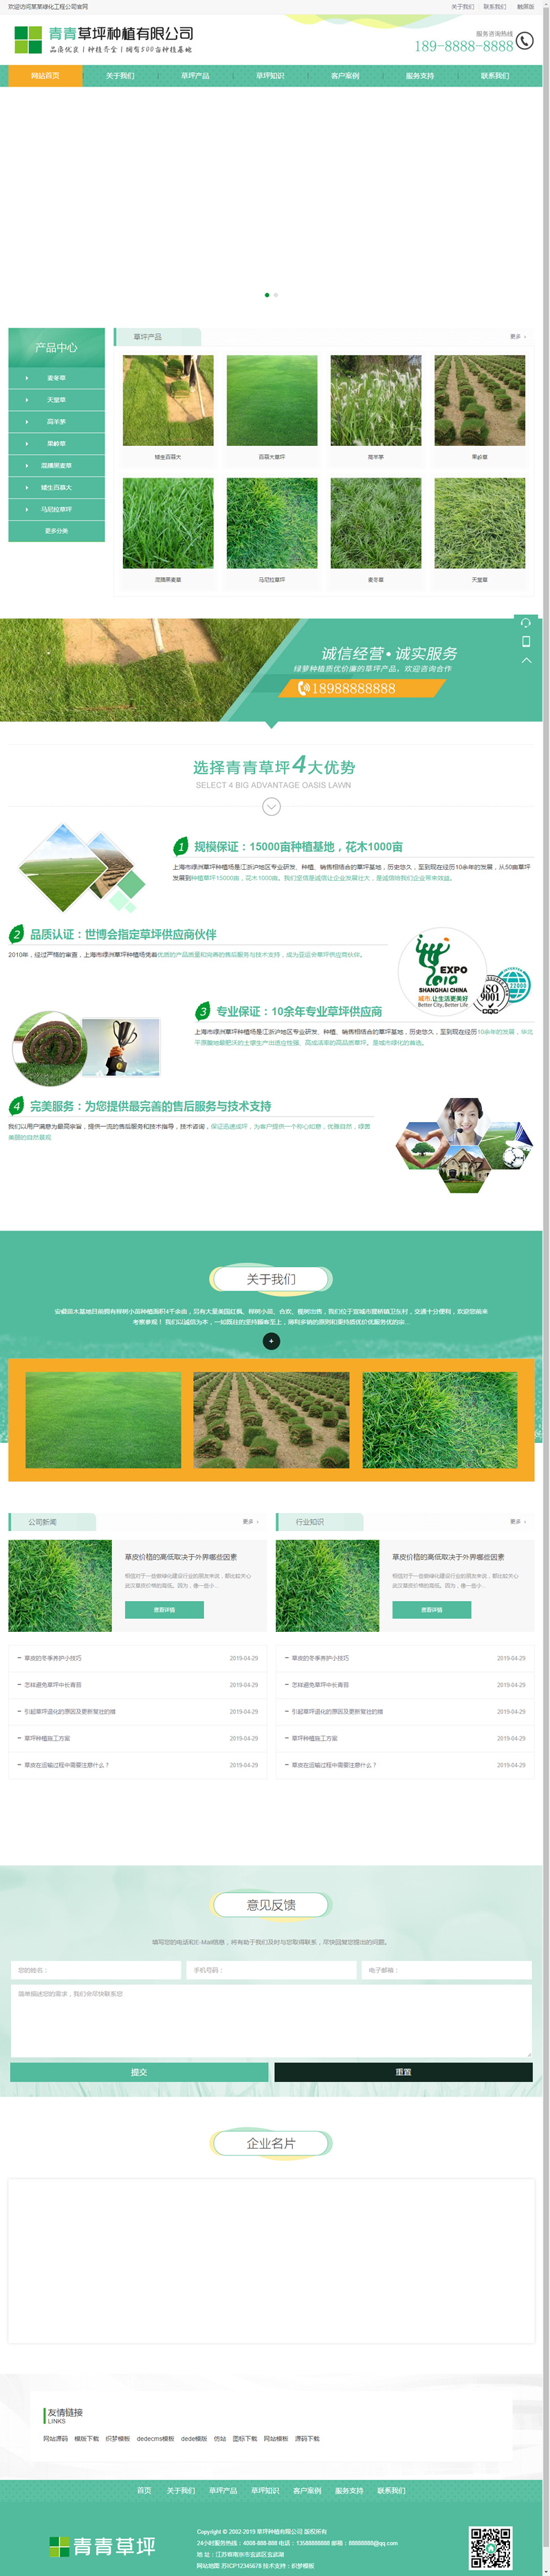 织梦模板带手机版数据同步 苗木草坪种植类网站源码 绿化草坪植被网站